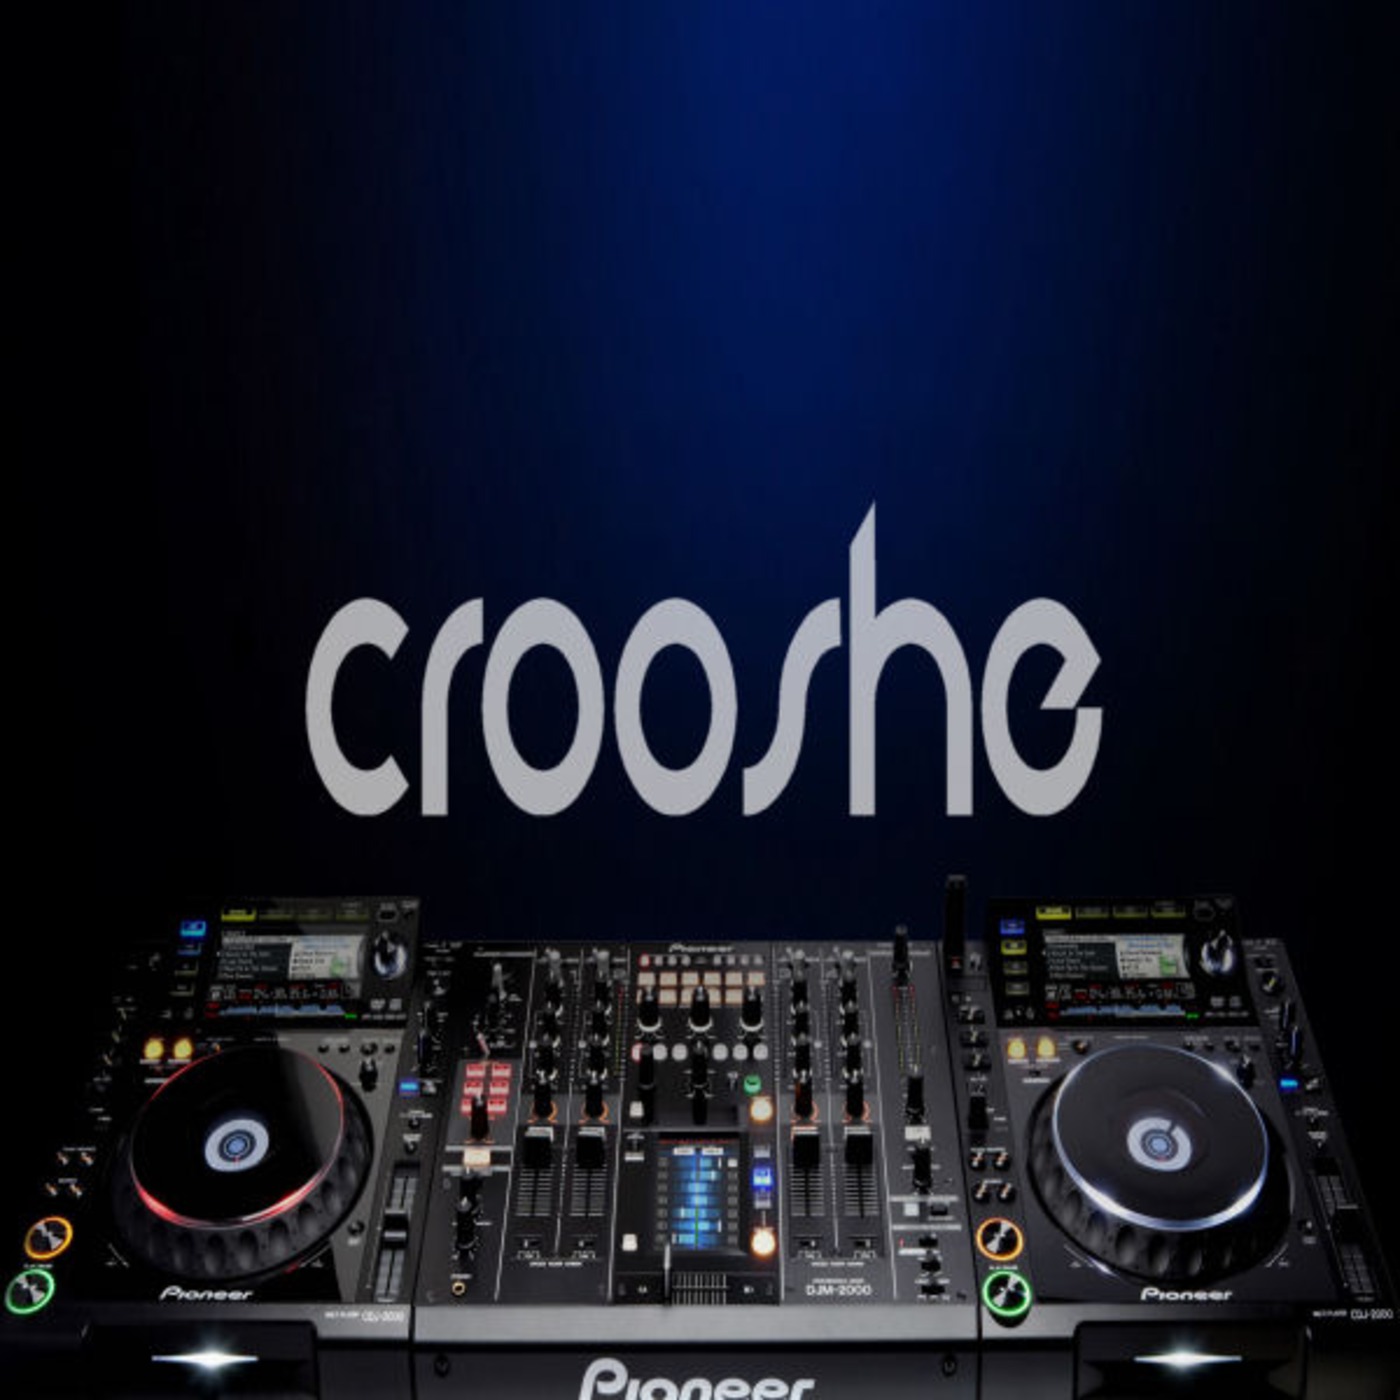 Crooshe Podcast